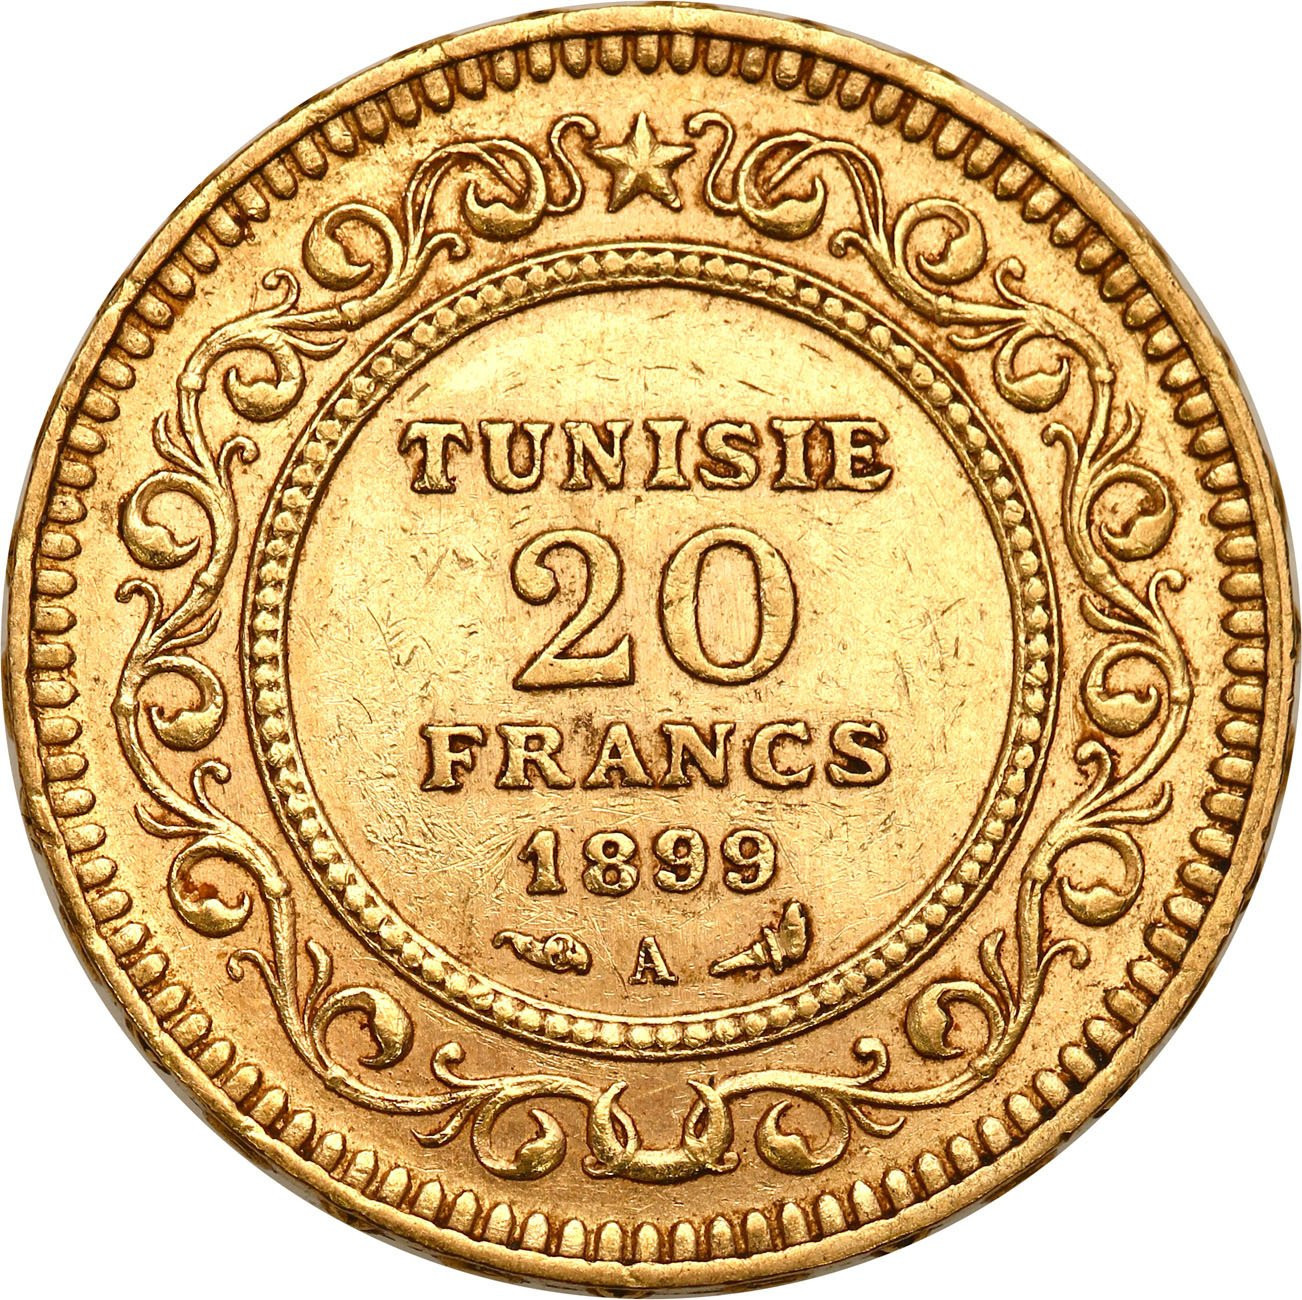 Tunezja. 20 franków 1899 kolonia francuska